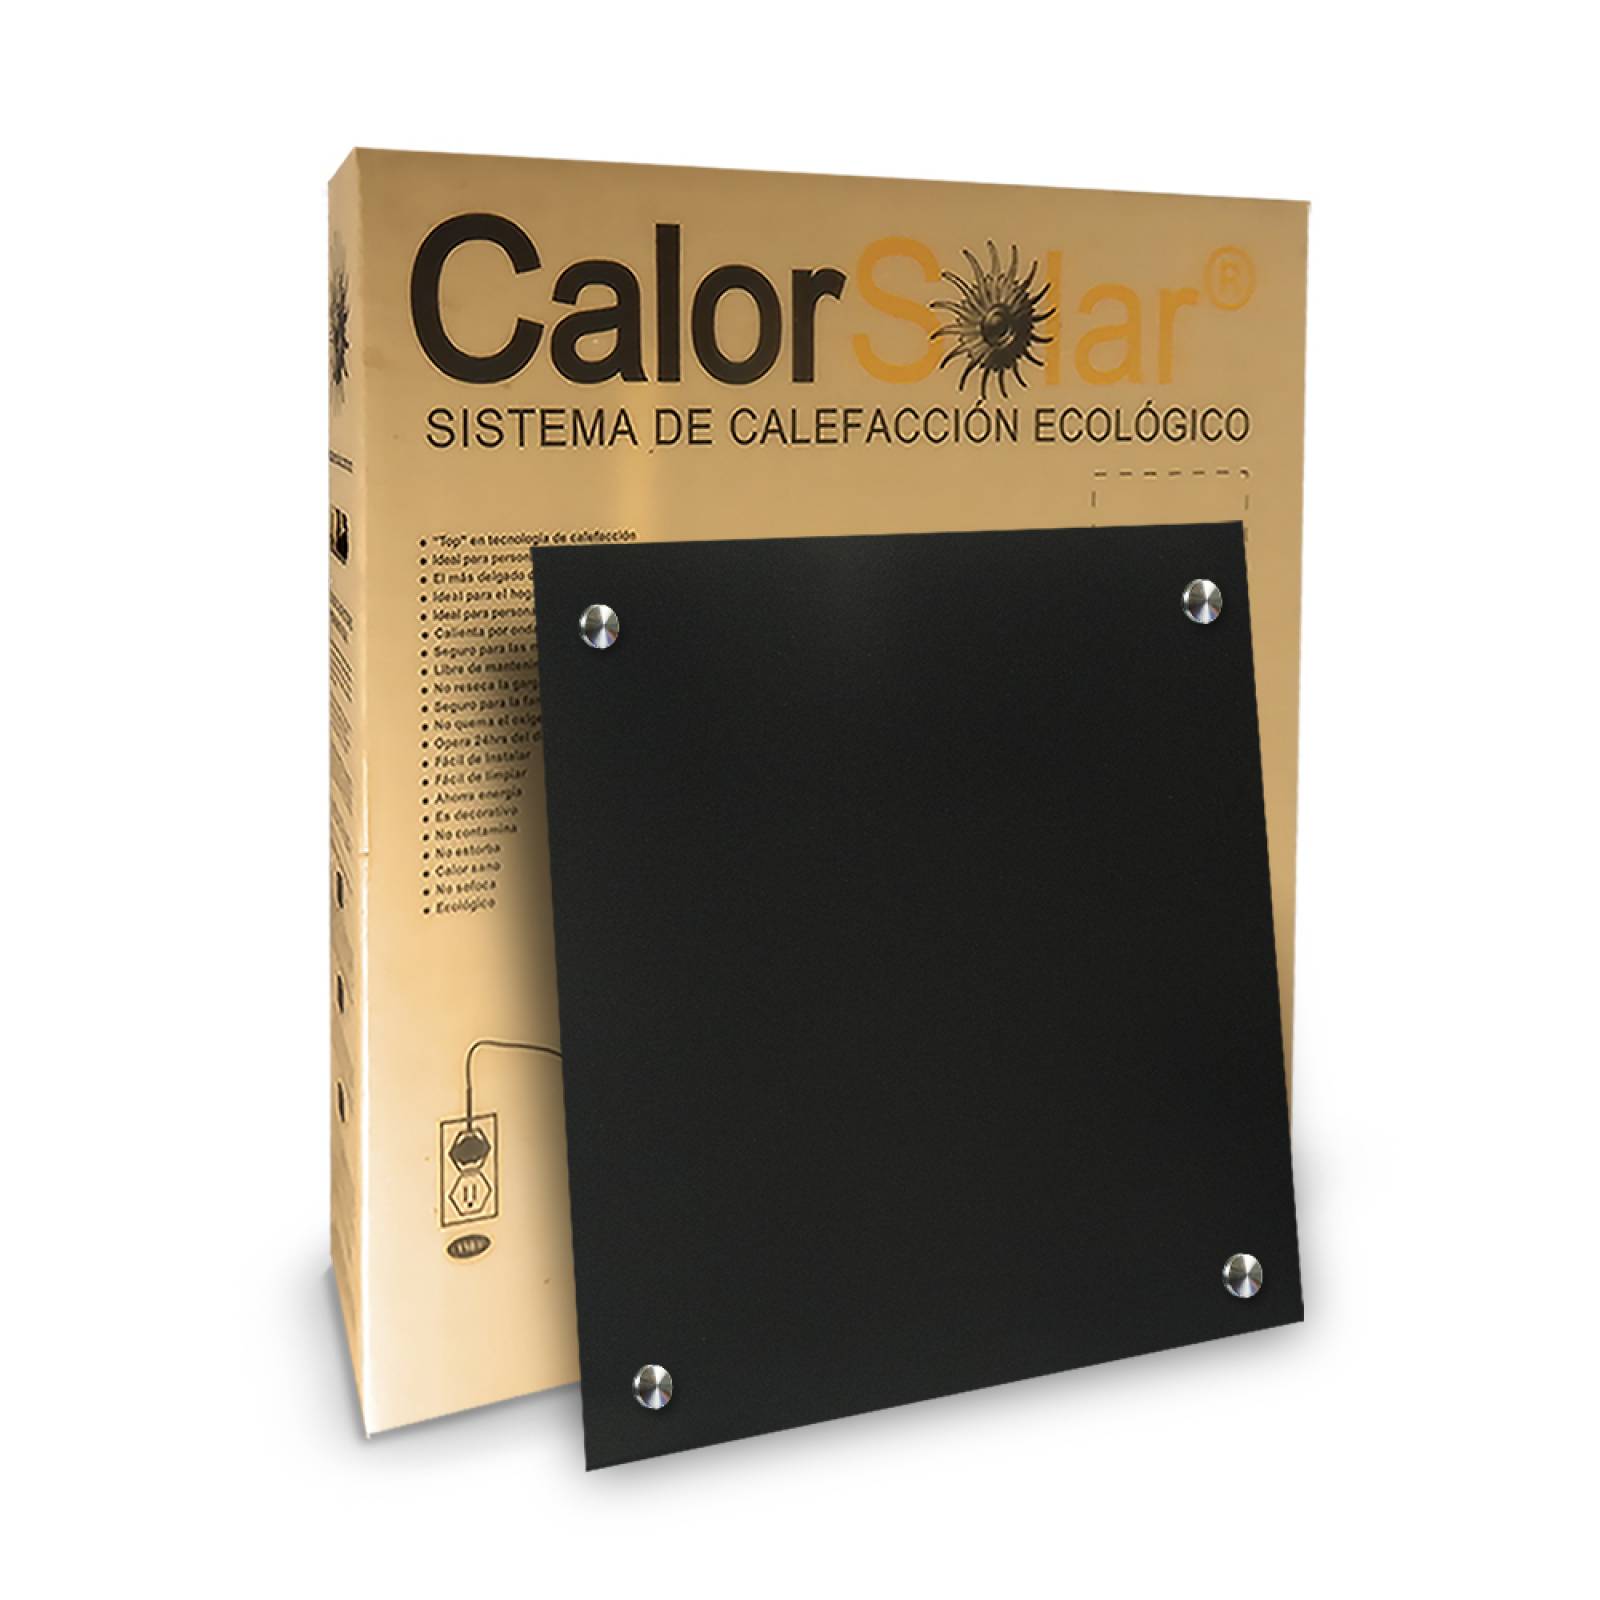 Calefactor de Panel infrarrojo en Aluminio para Techo, Ontario Wave Black Cloud de 380W 59x59cm, Mod: 381CaSol-TN